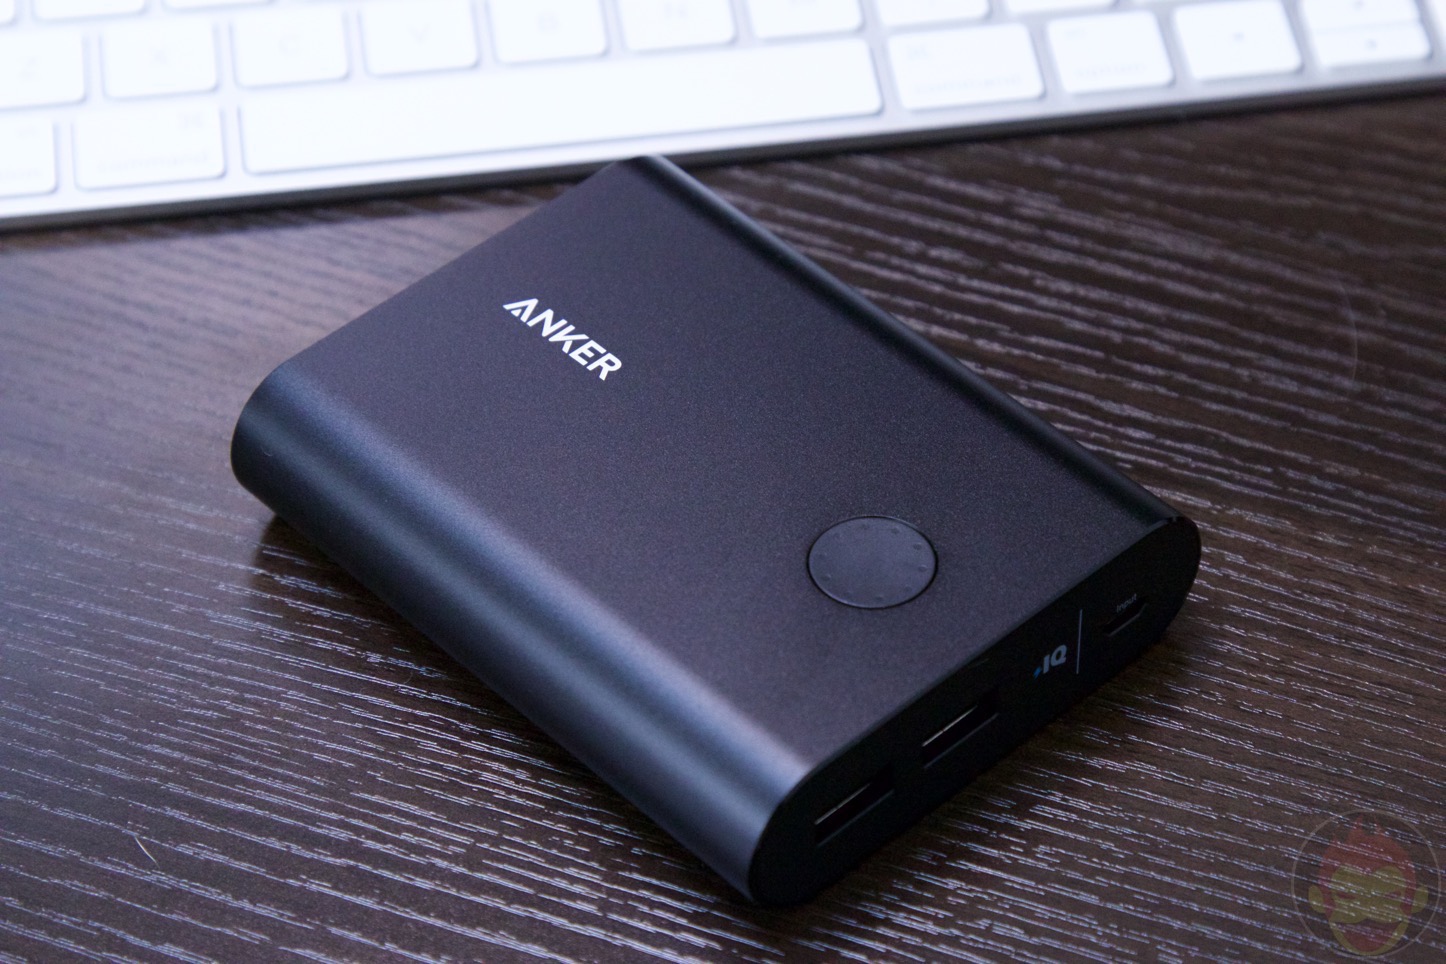 Anker-PowerCore-10400-Mobile-Battery-03.jpg